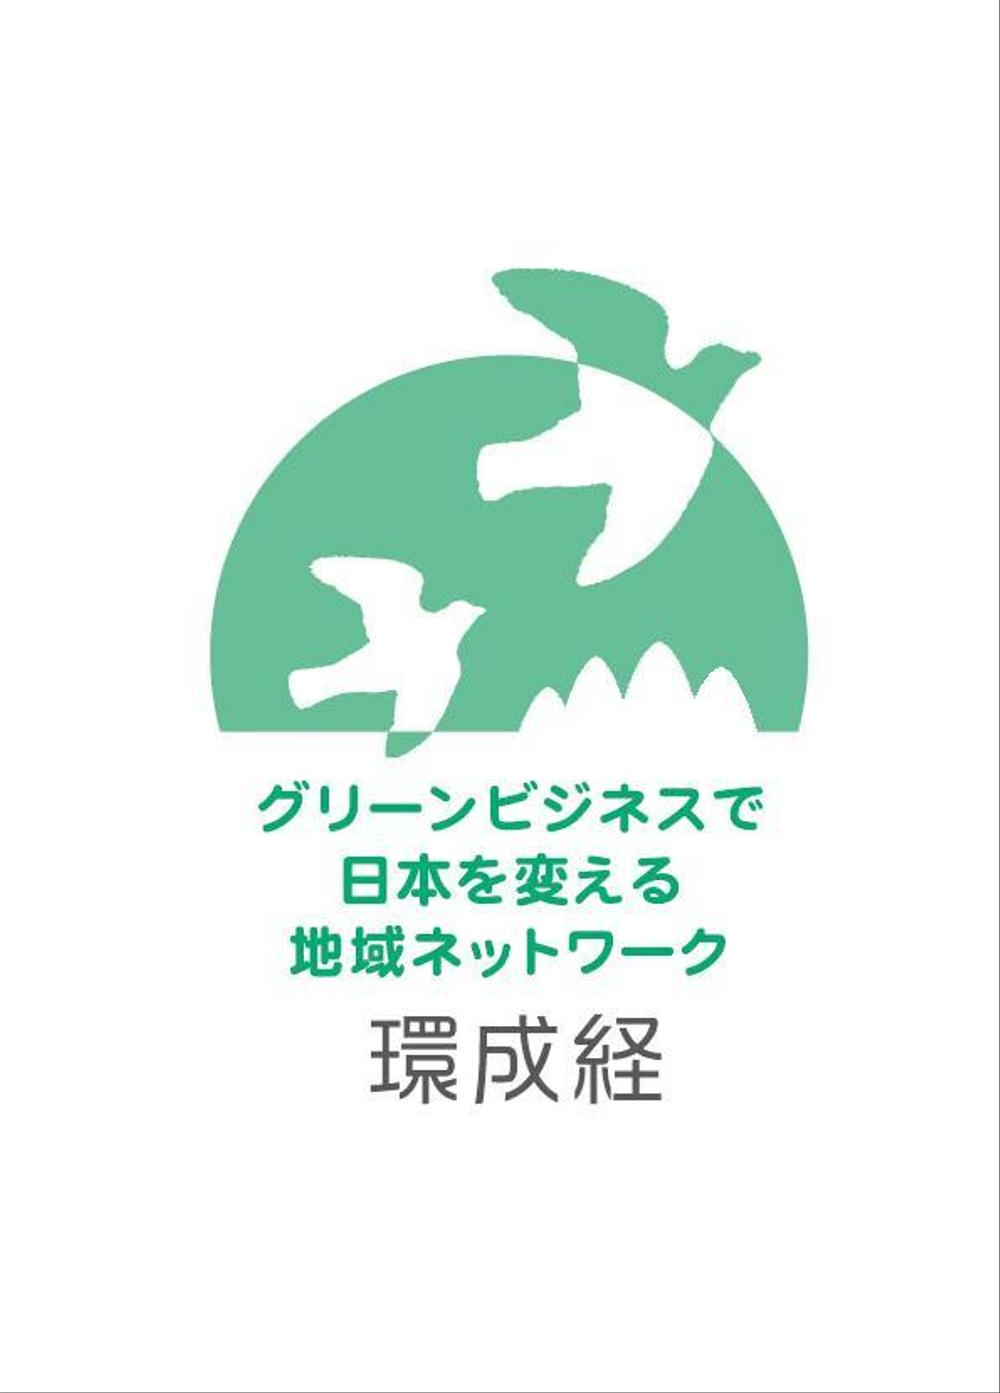 新規事業（グリーンビジネス）のロゴ作成